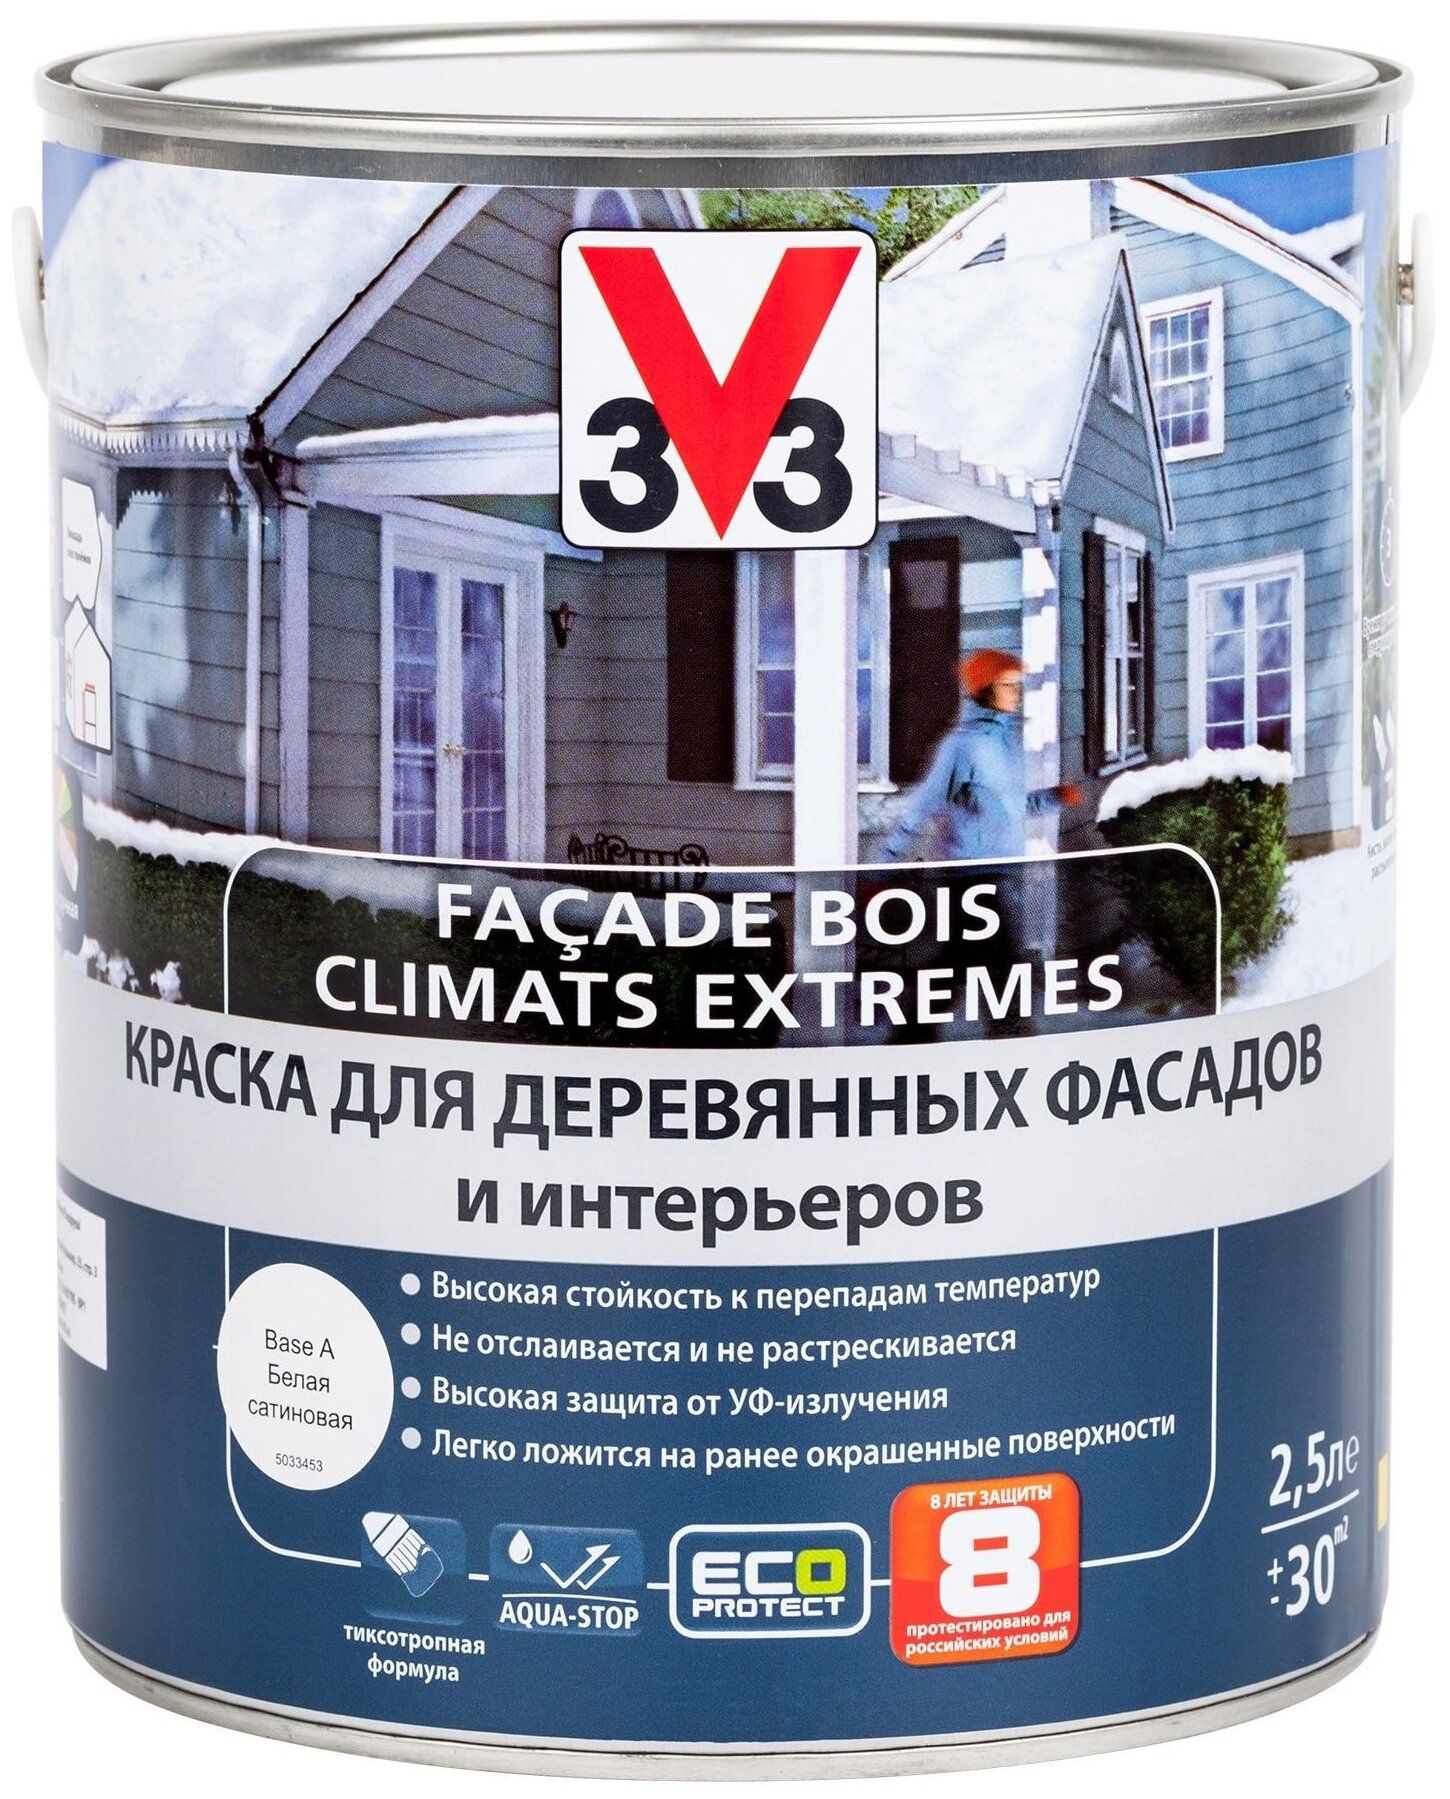 Краска для деревянных фасадов и интерьеров V33 "Climats Extrimes", цвет: белый, 2,5 л